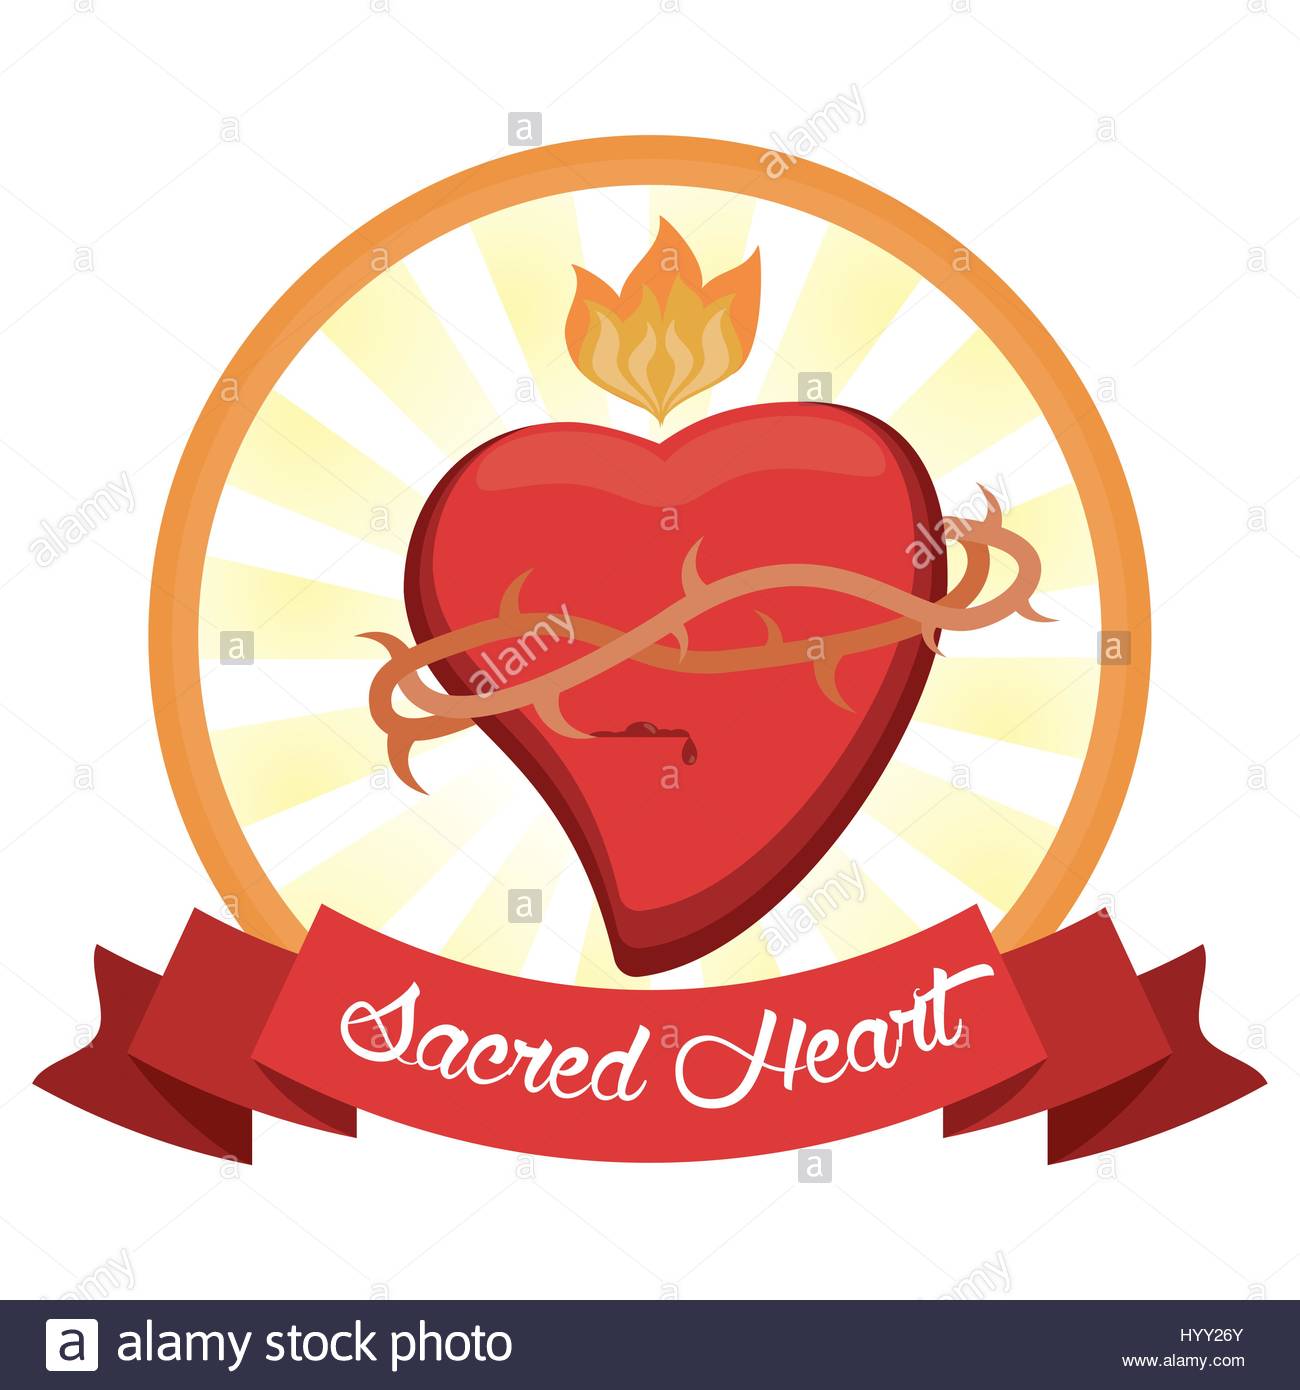 sacred heart jesus christ image hyy26y